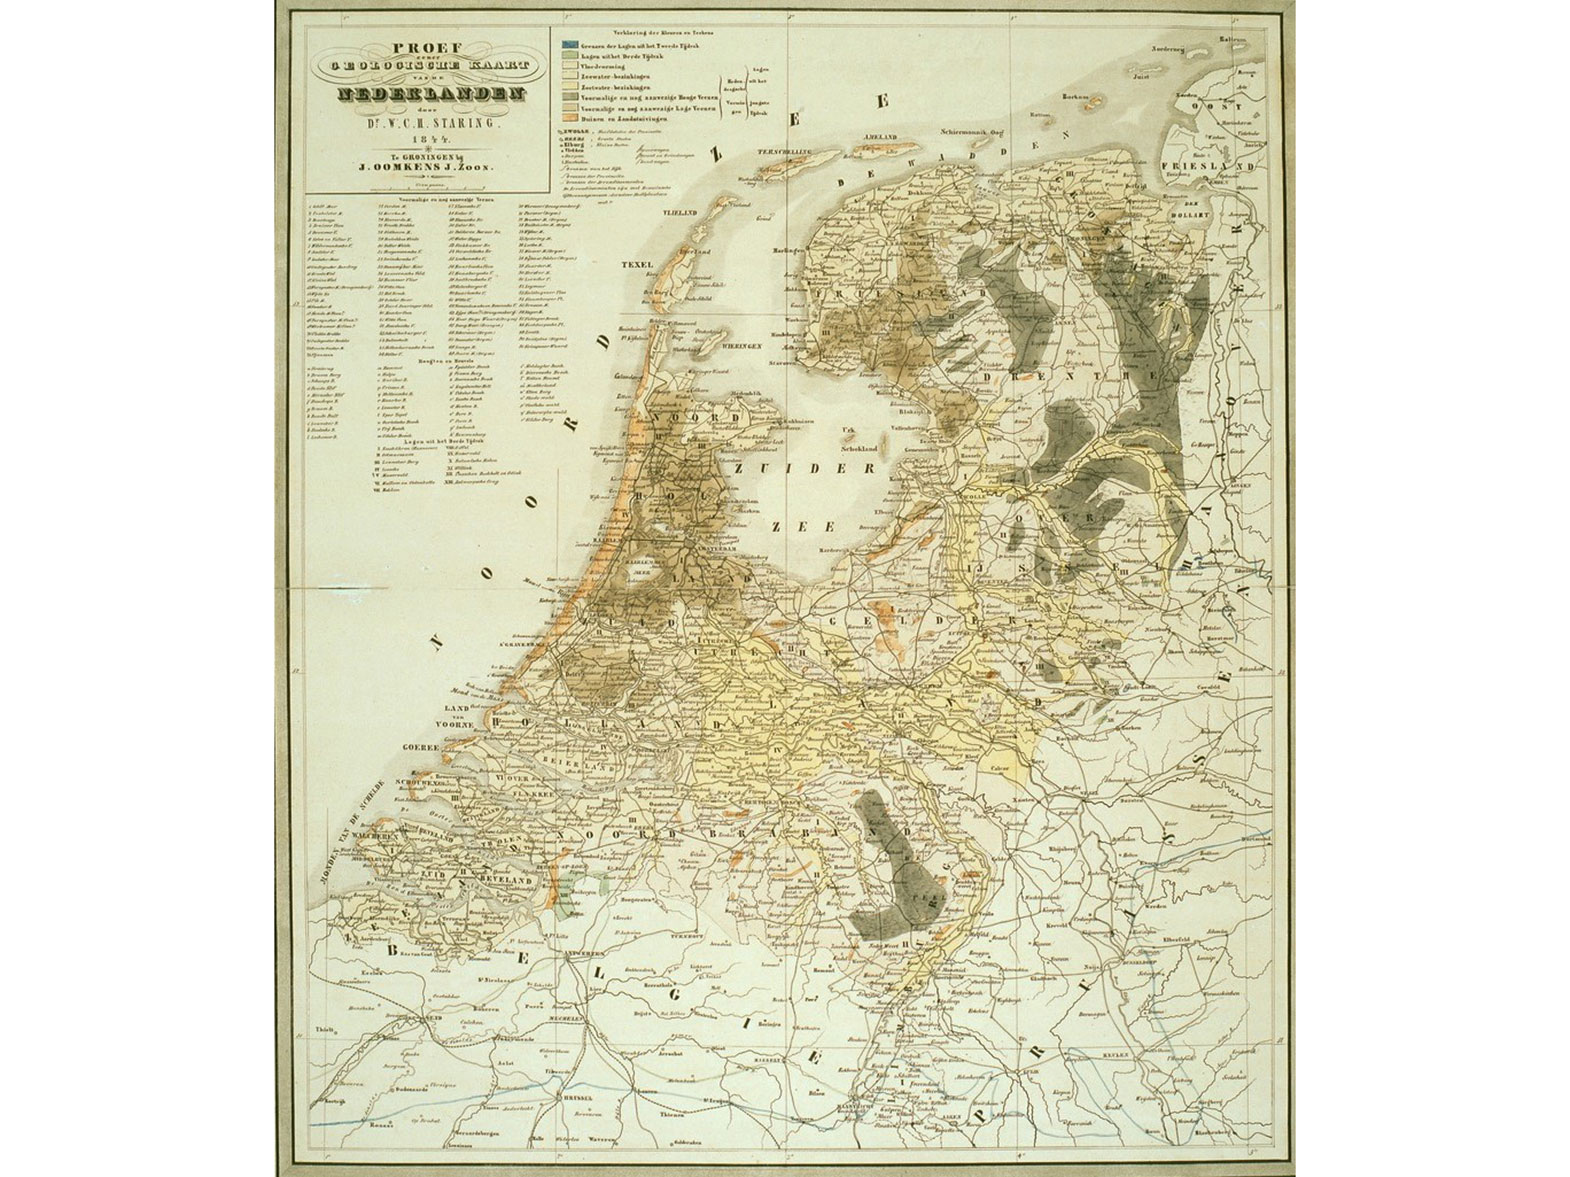 Proef van een Geologische kaart van Nederland